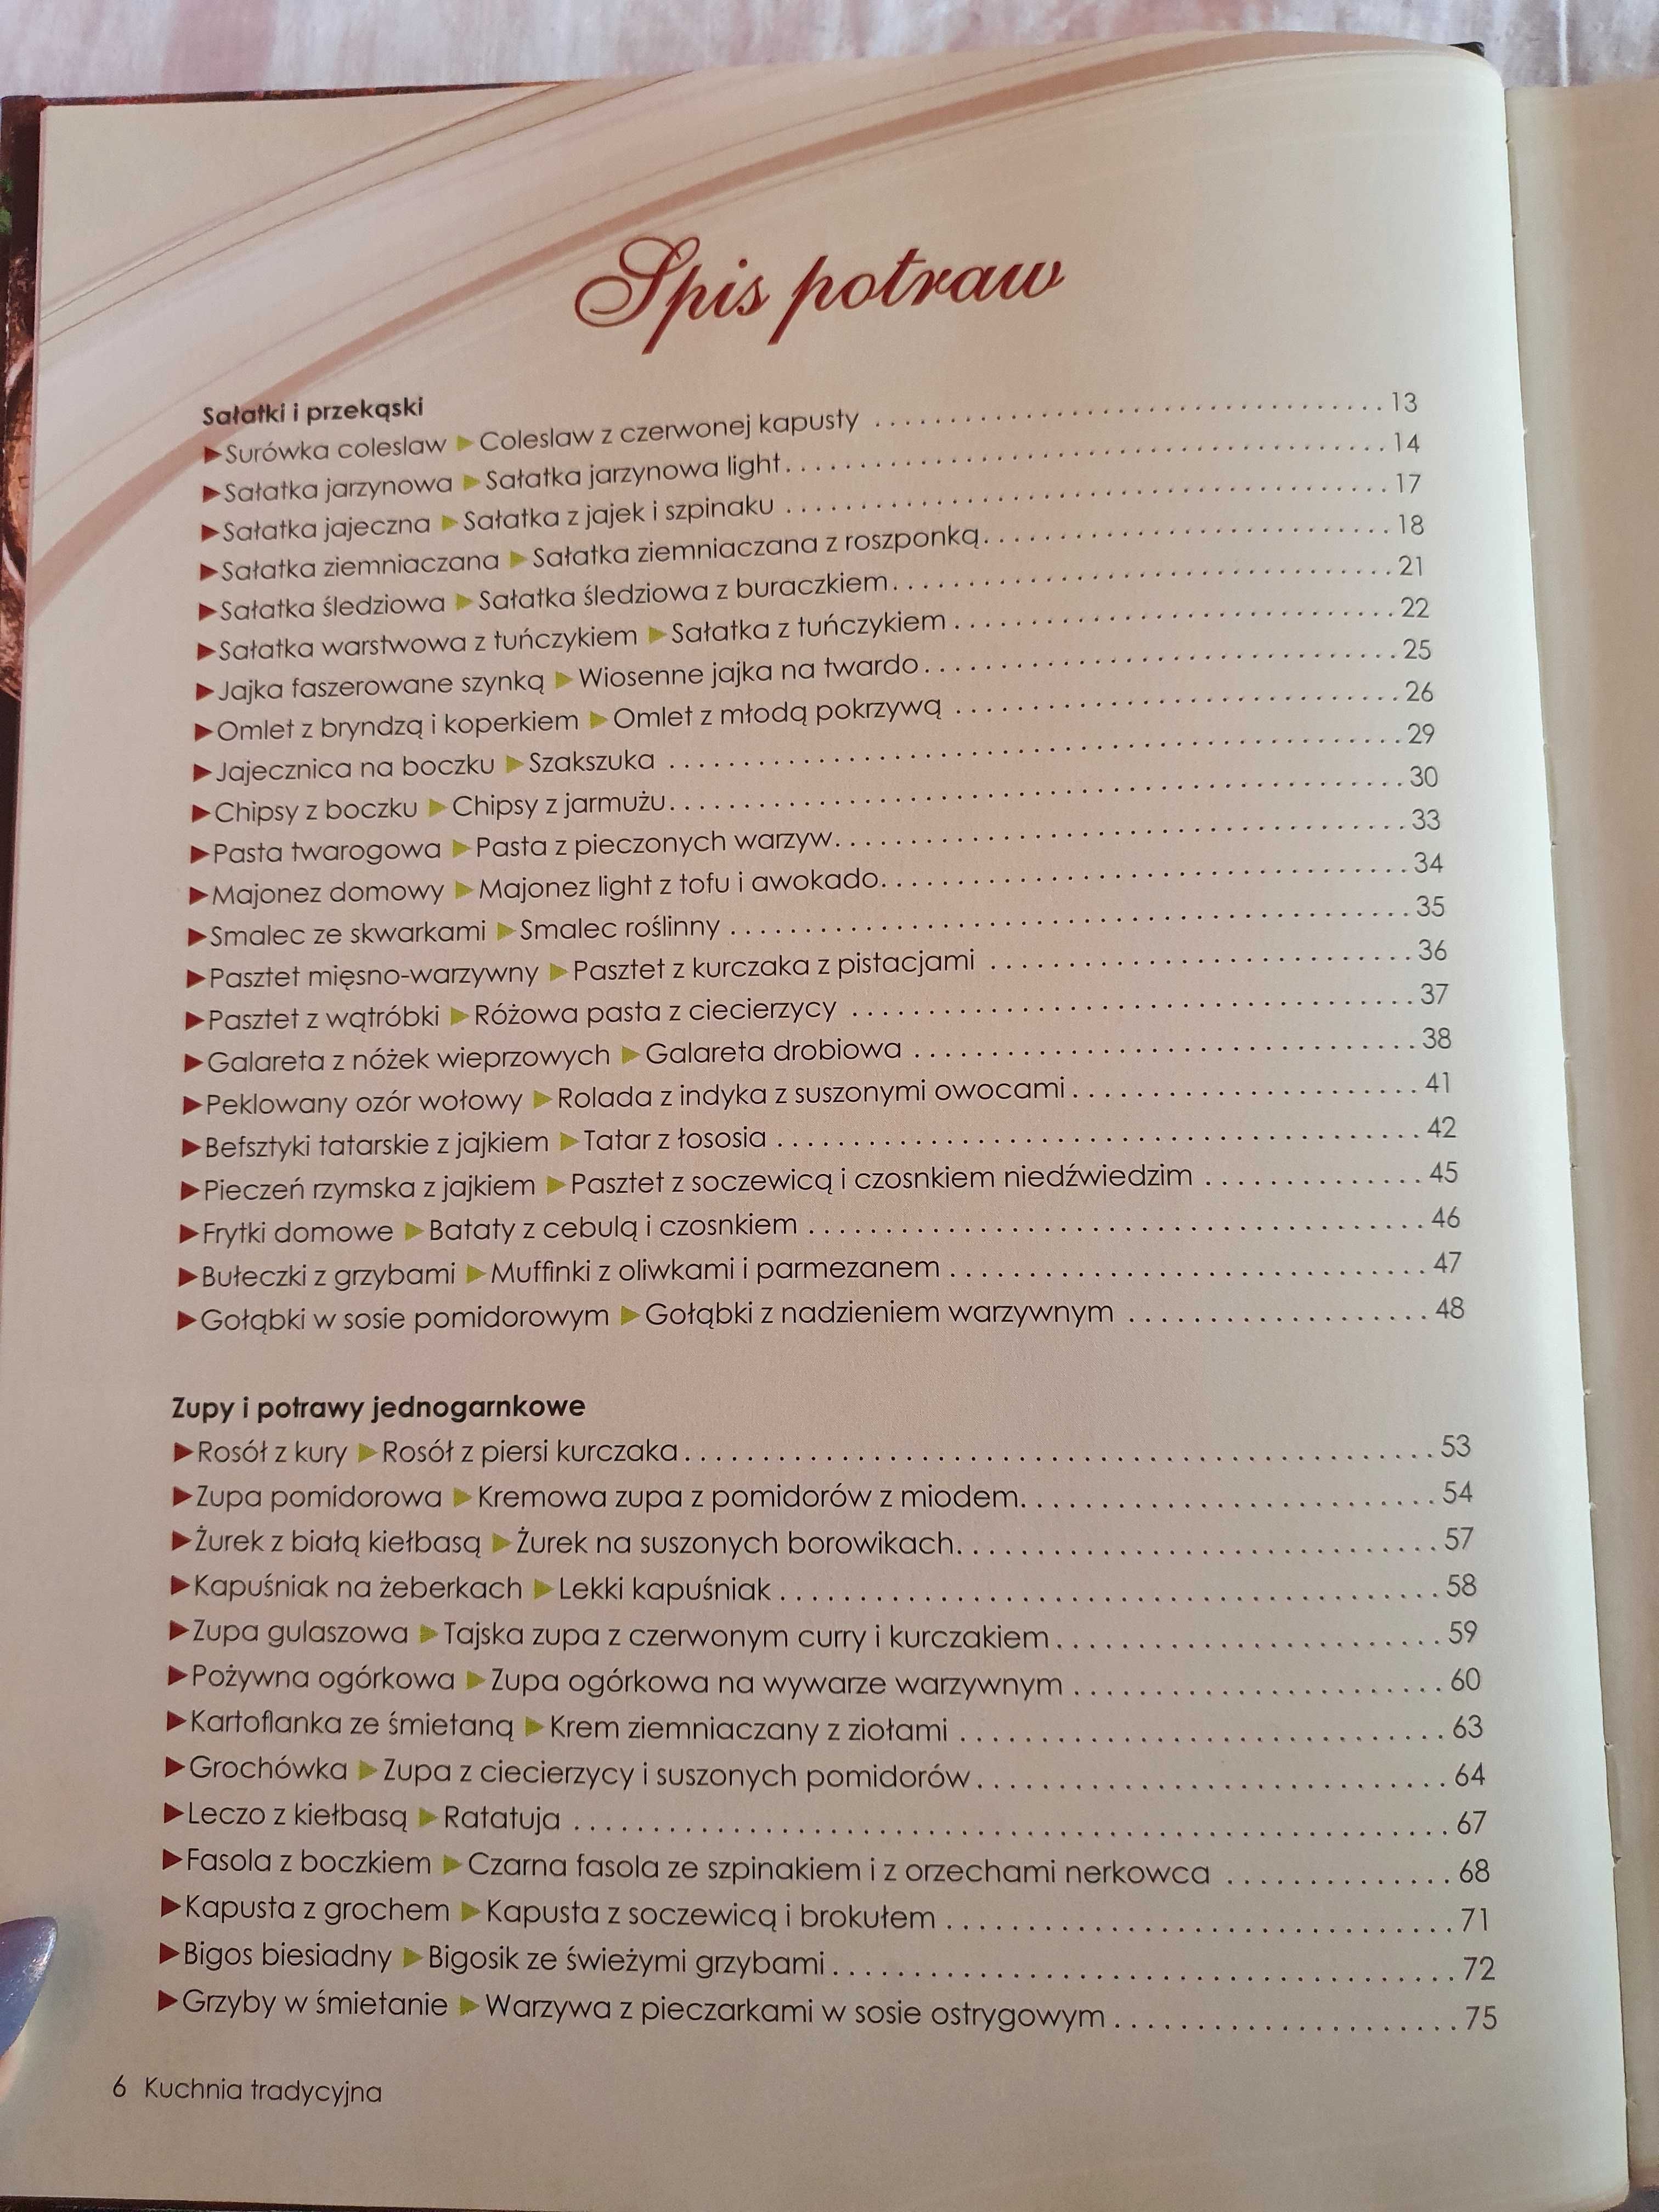 Książka kucharska "Kuchnia tradycyjna / Kuchnia light"